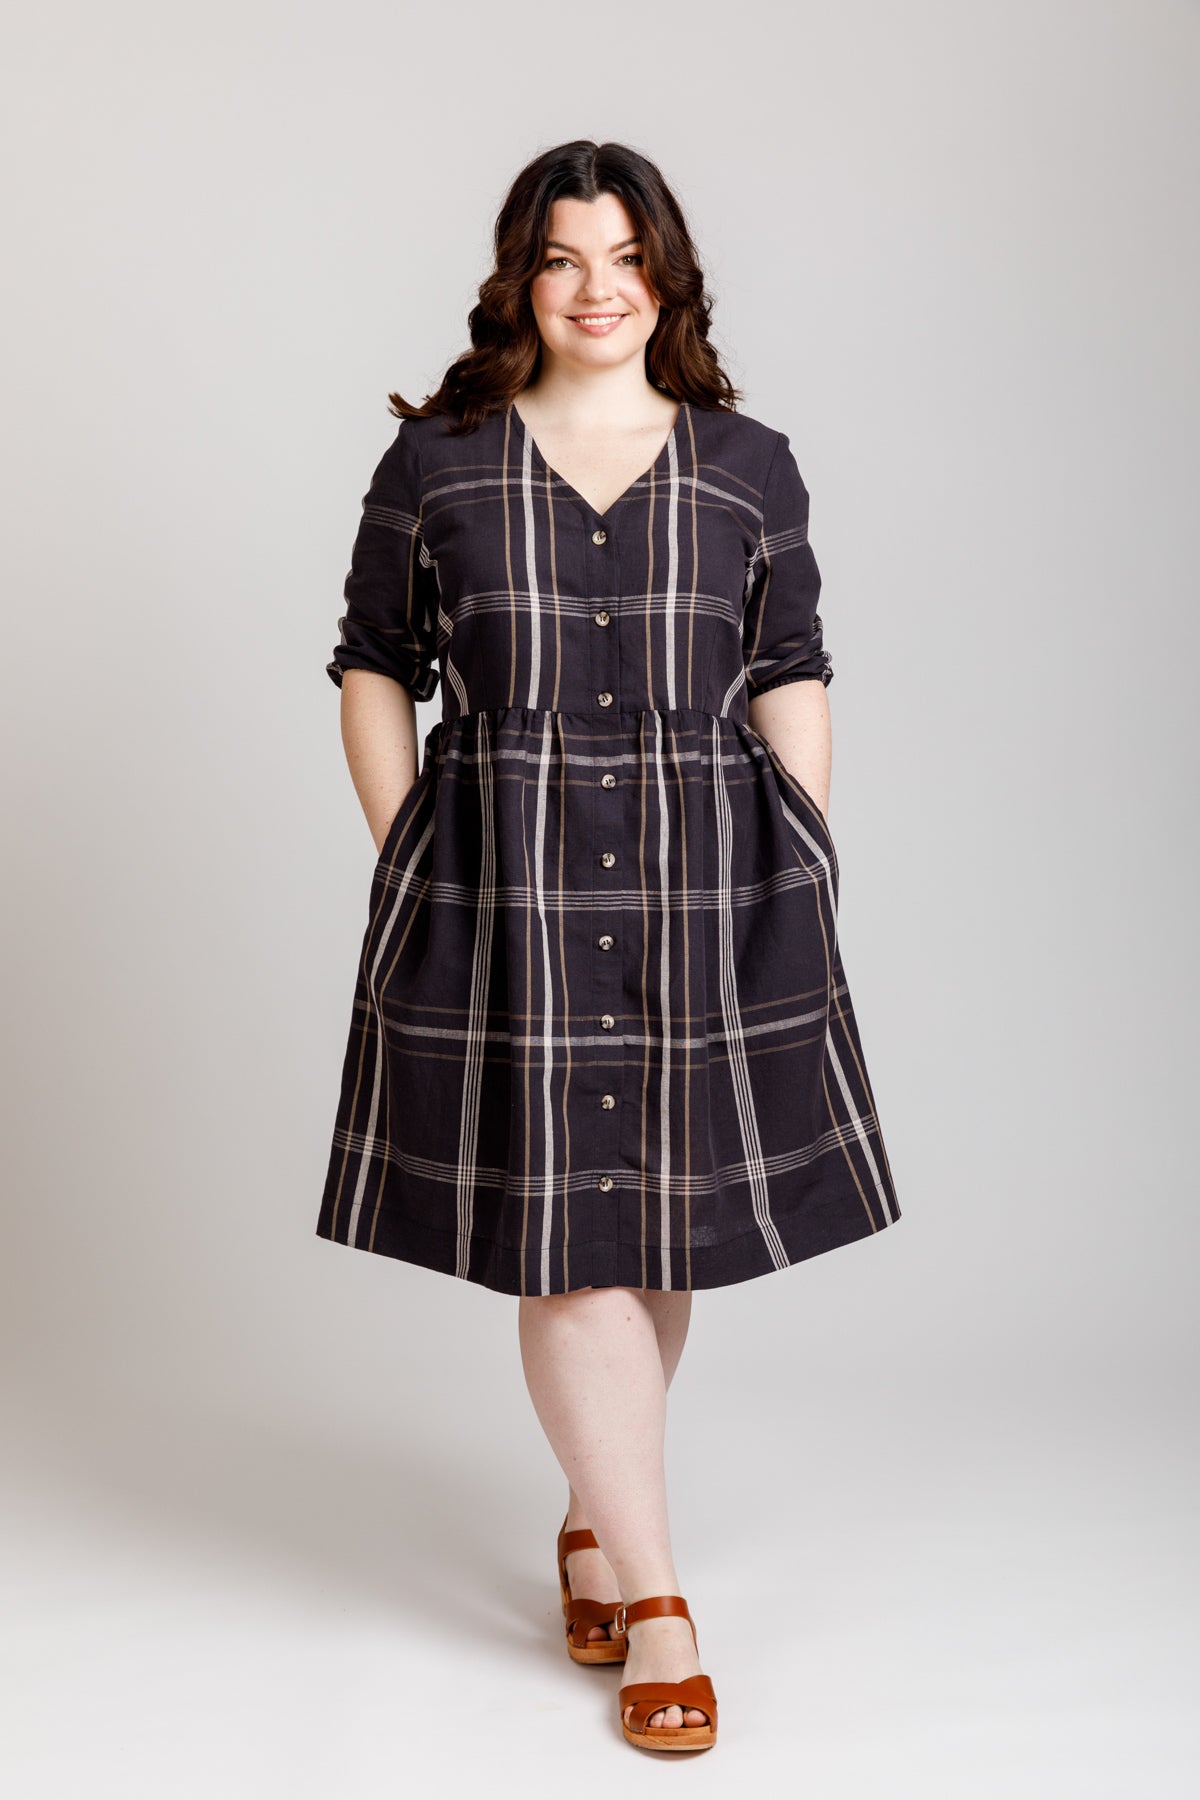 A Modern Darling Ranges Shirt Dress: Megan Nielsen Pattern Review